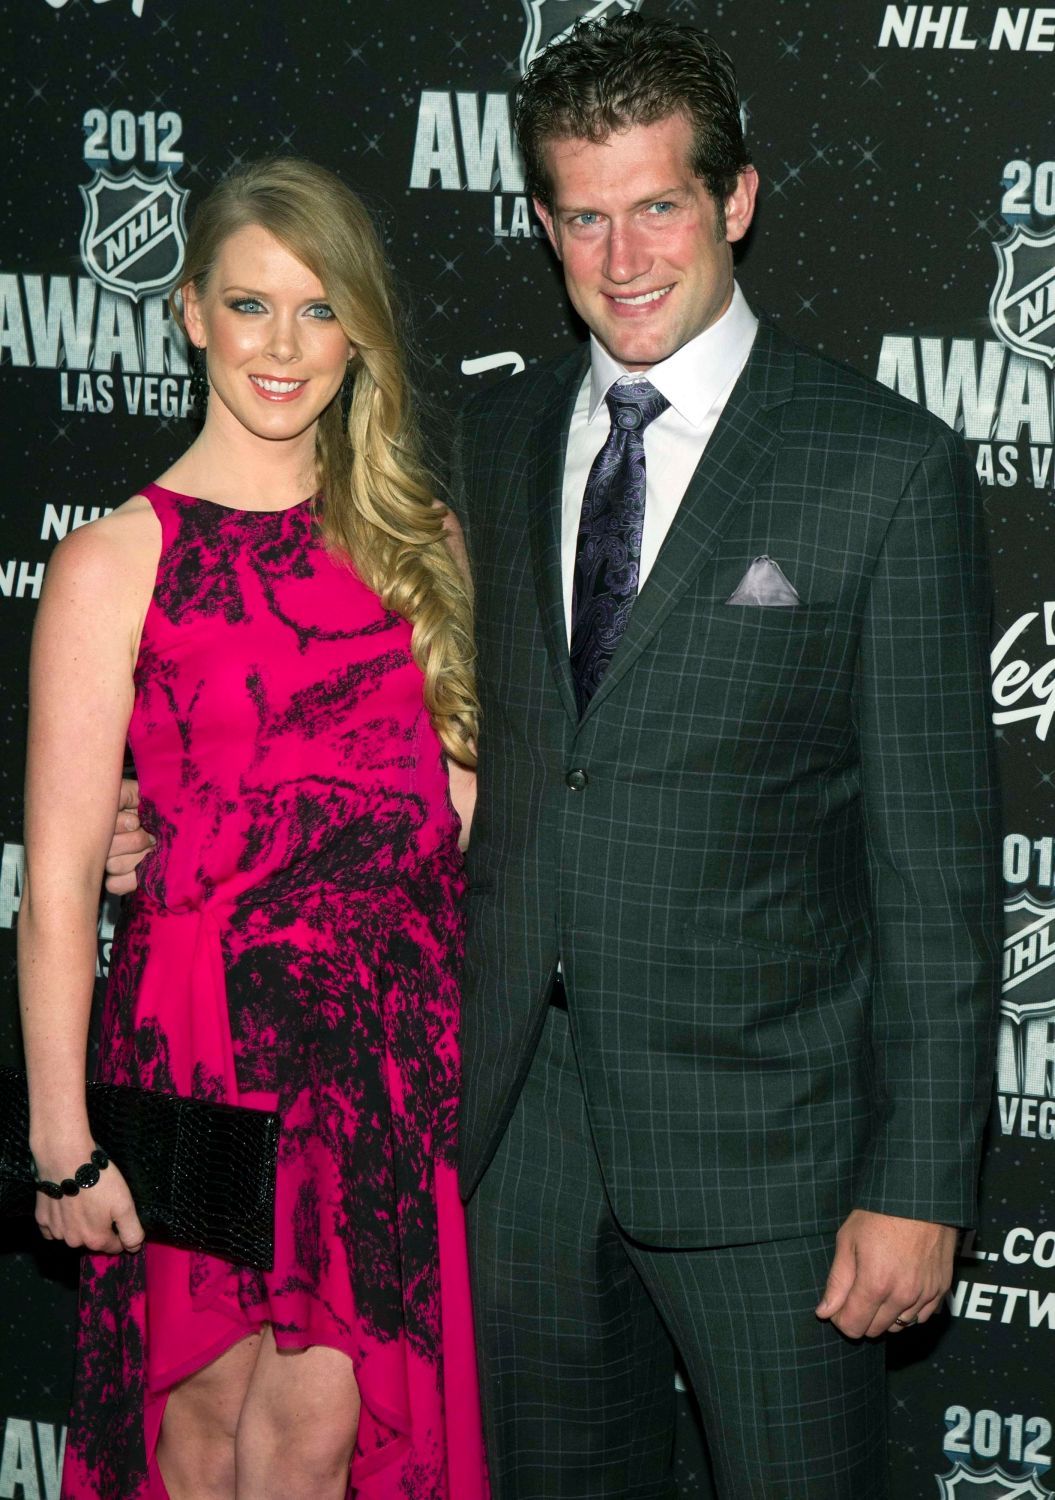 Útočník St. Louis Blues David Backes s manželkou Kelly během předávání trofejí NHL v Las Vegas za sezónu 2011/12